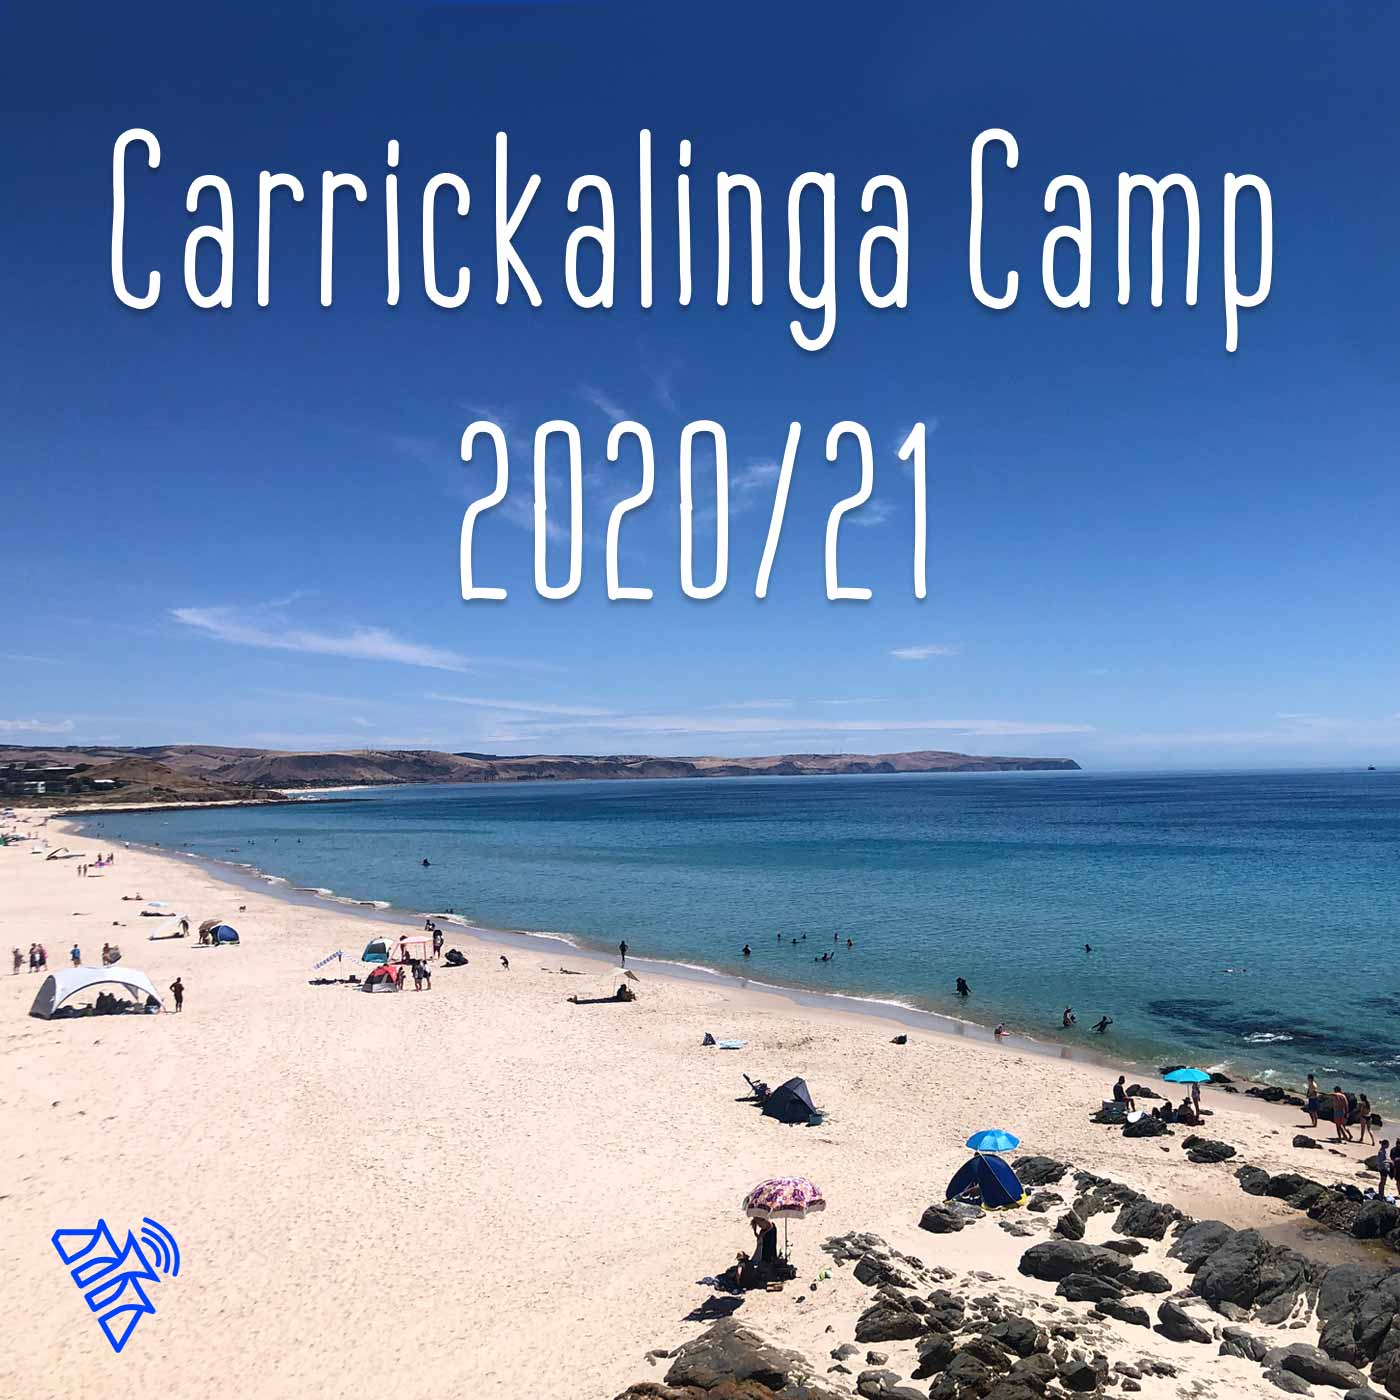 The way we use words  (Carrickalinga Camp Dec 2020)